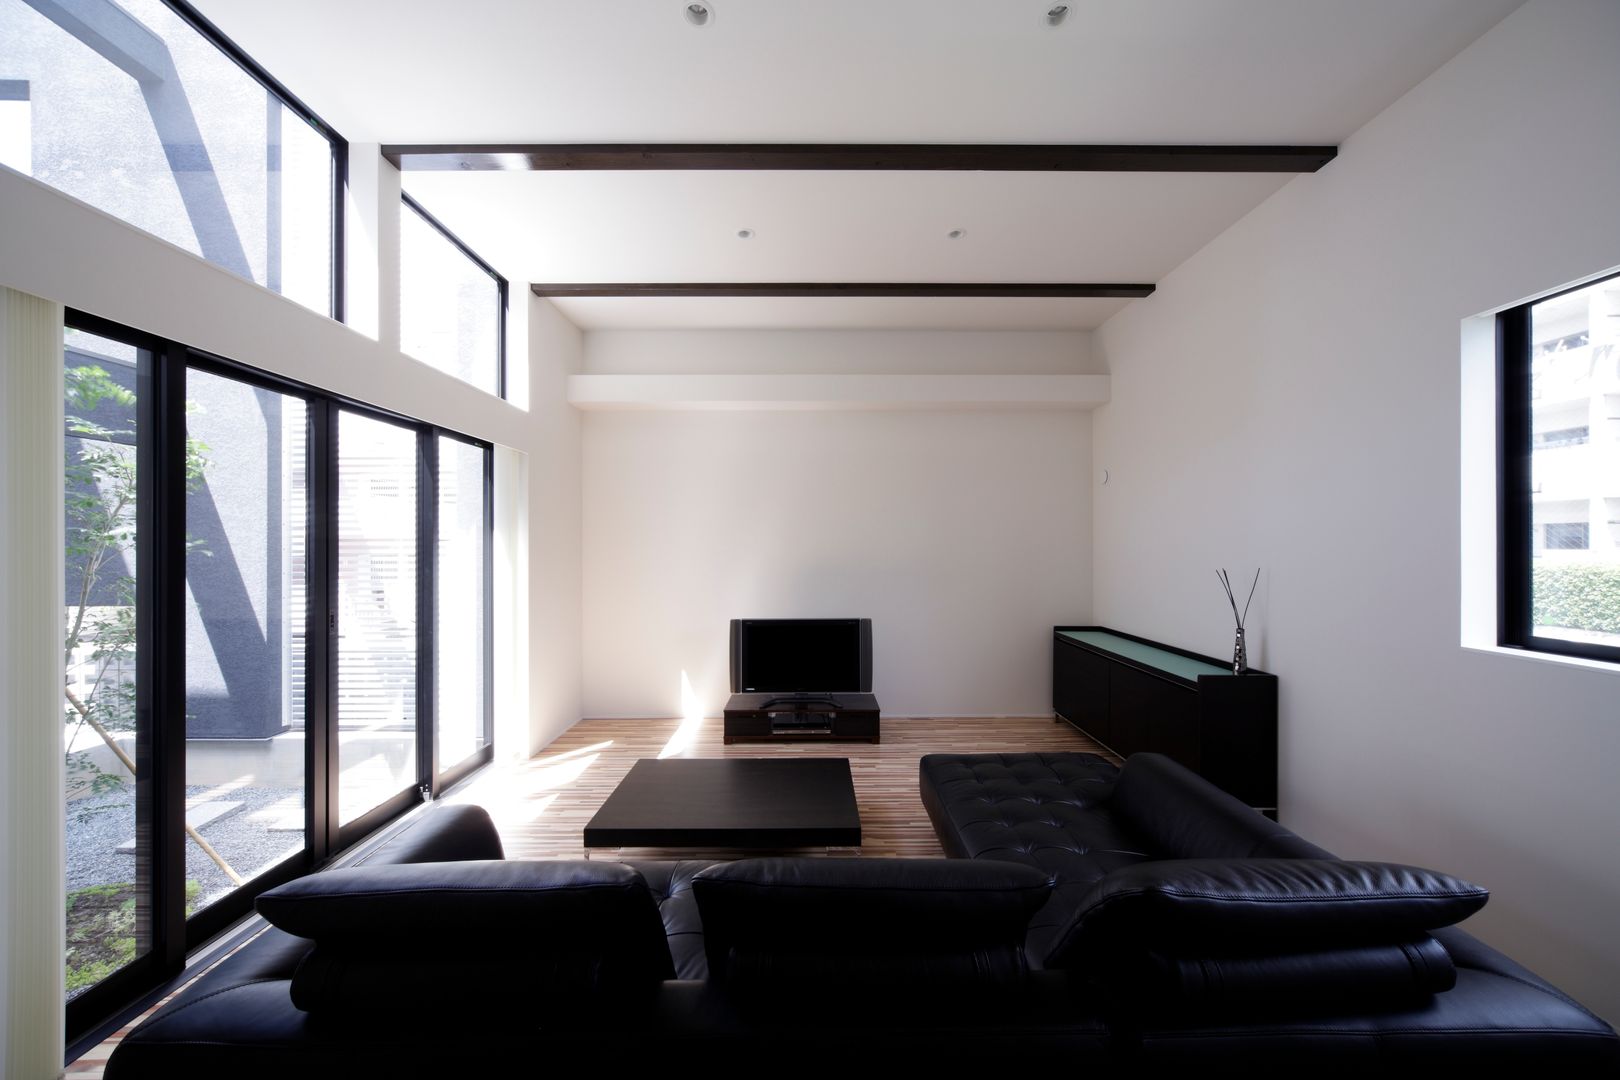 S House , artect design - アルテクト デザイン artect design - アルテクト デザイン غرفة المعيشة